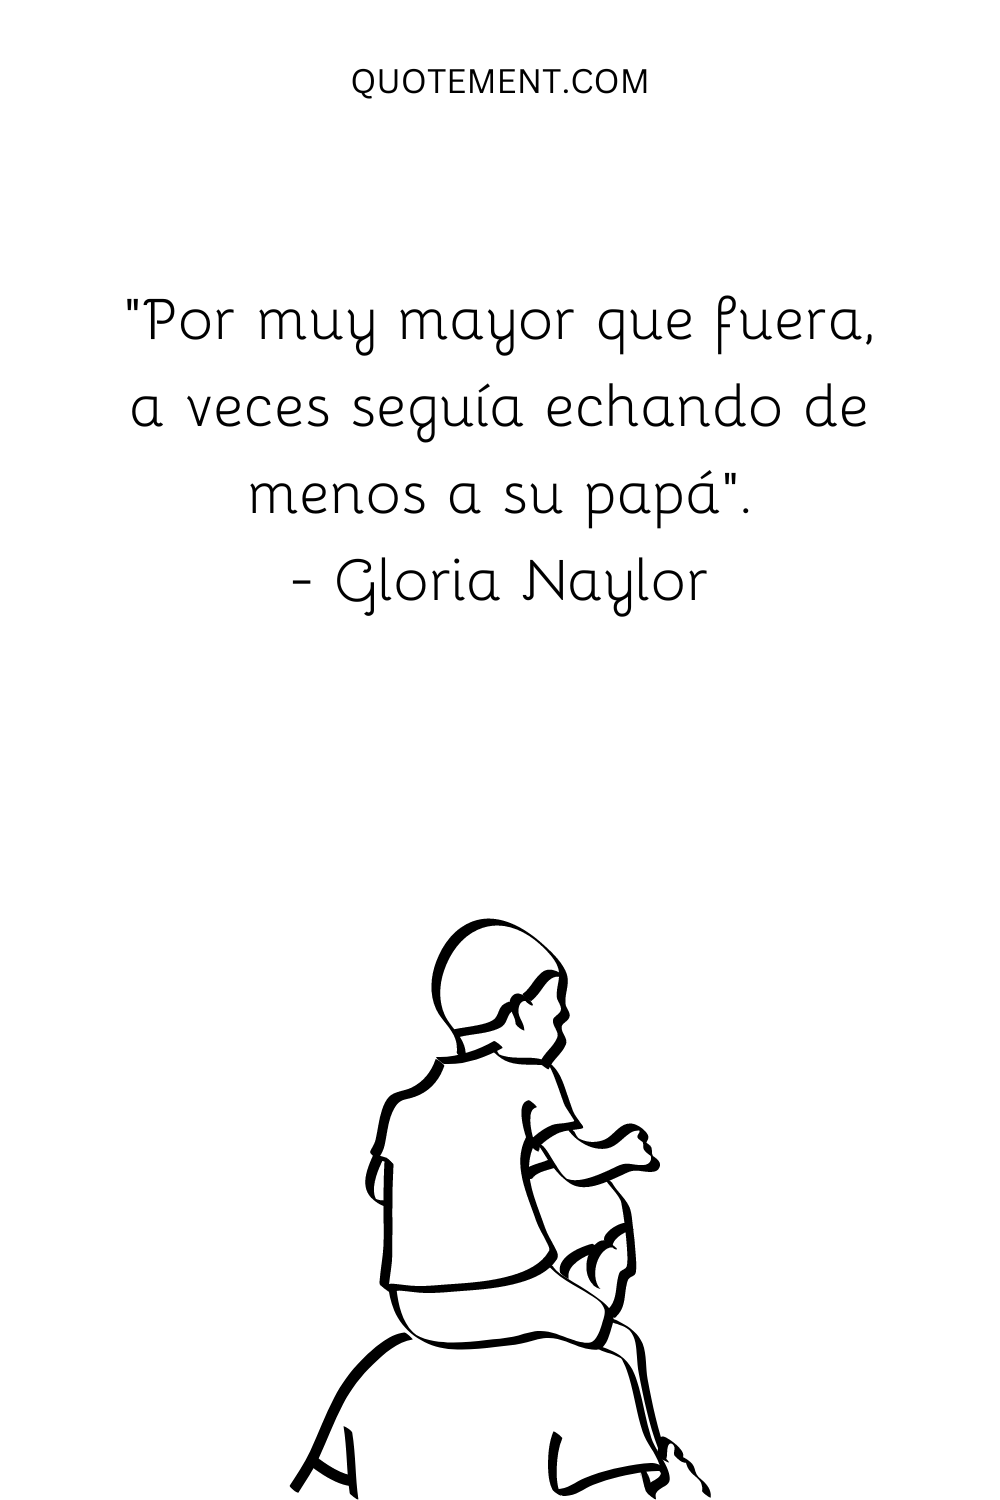 "Por muy mayor que fuera, a veces seguía echando de menos a su papá". - Gloria Naylor